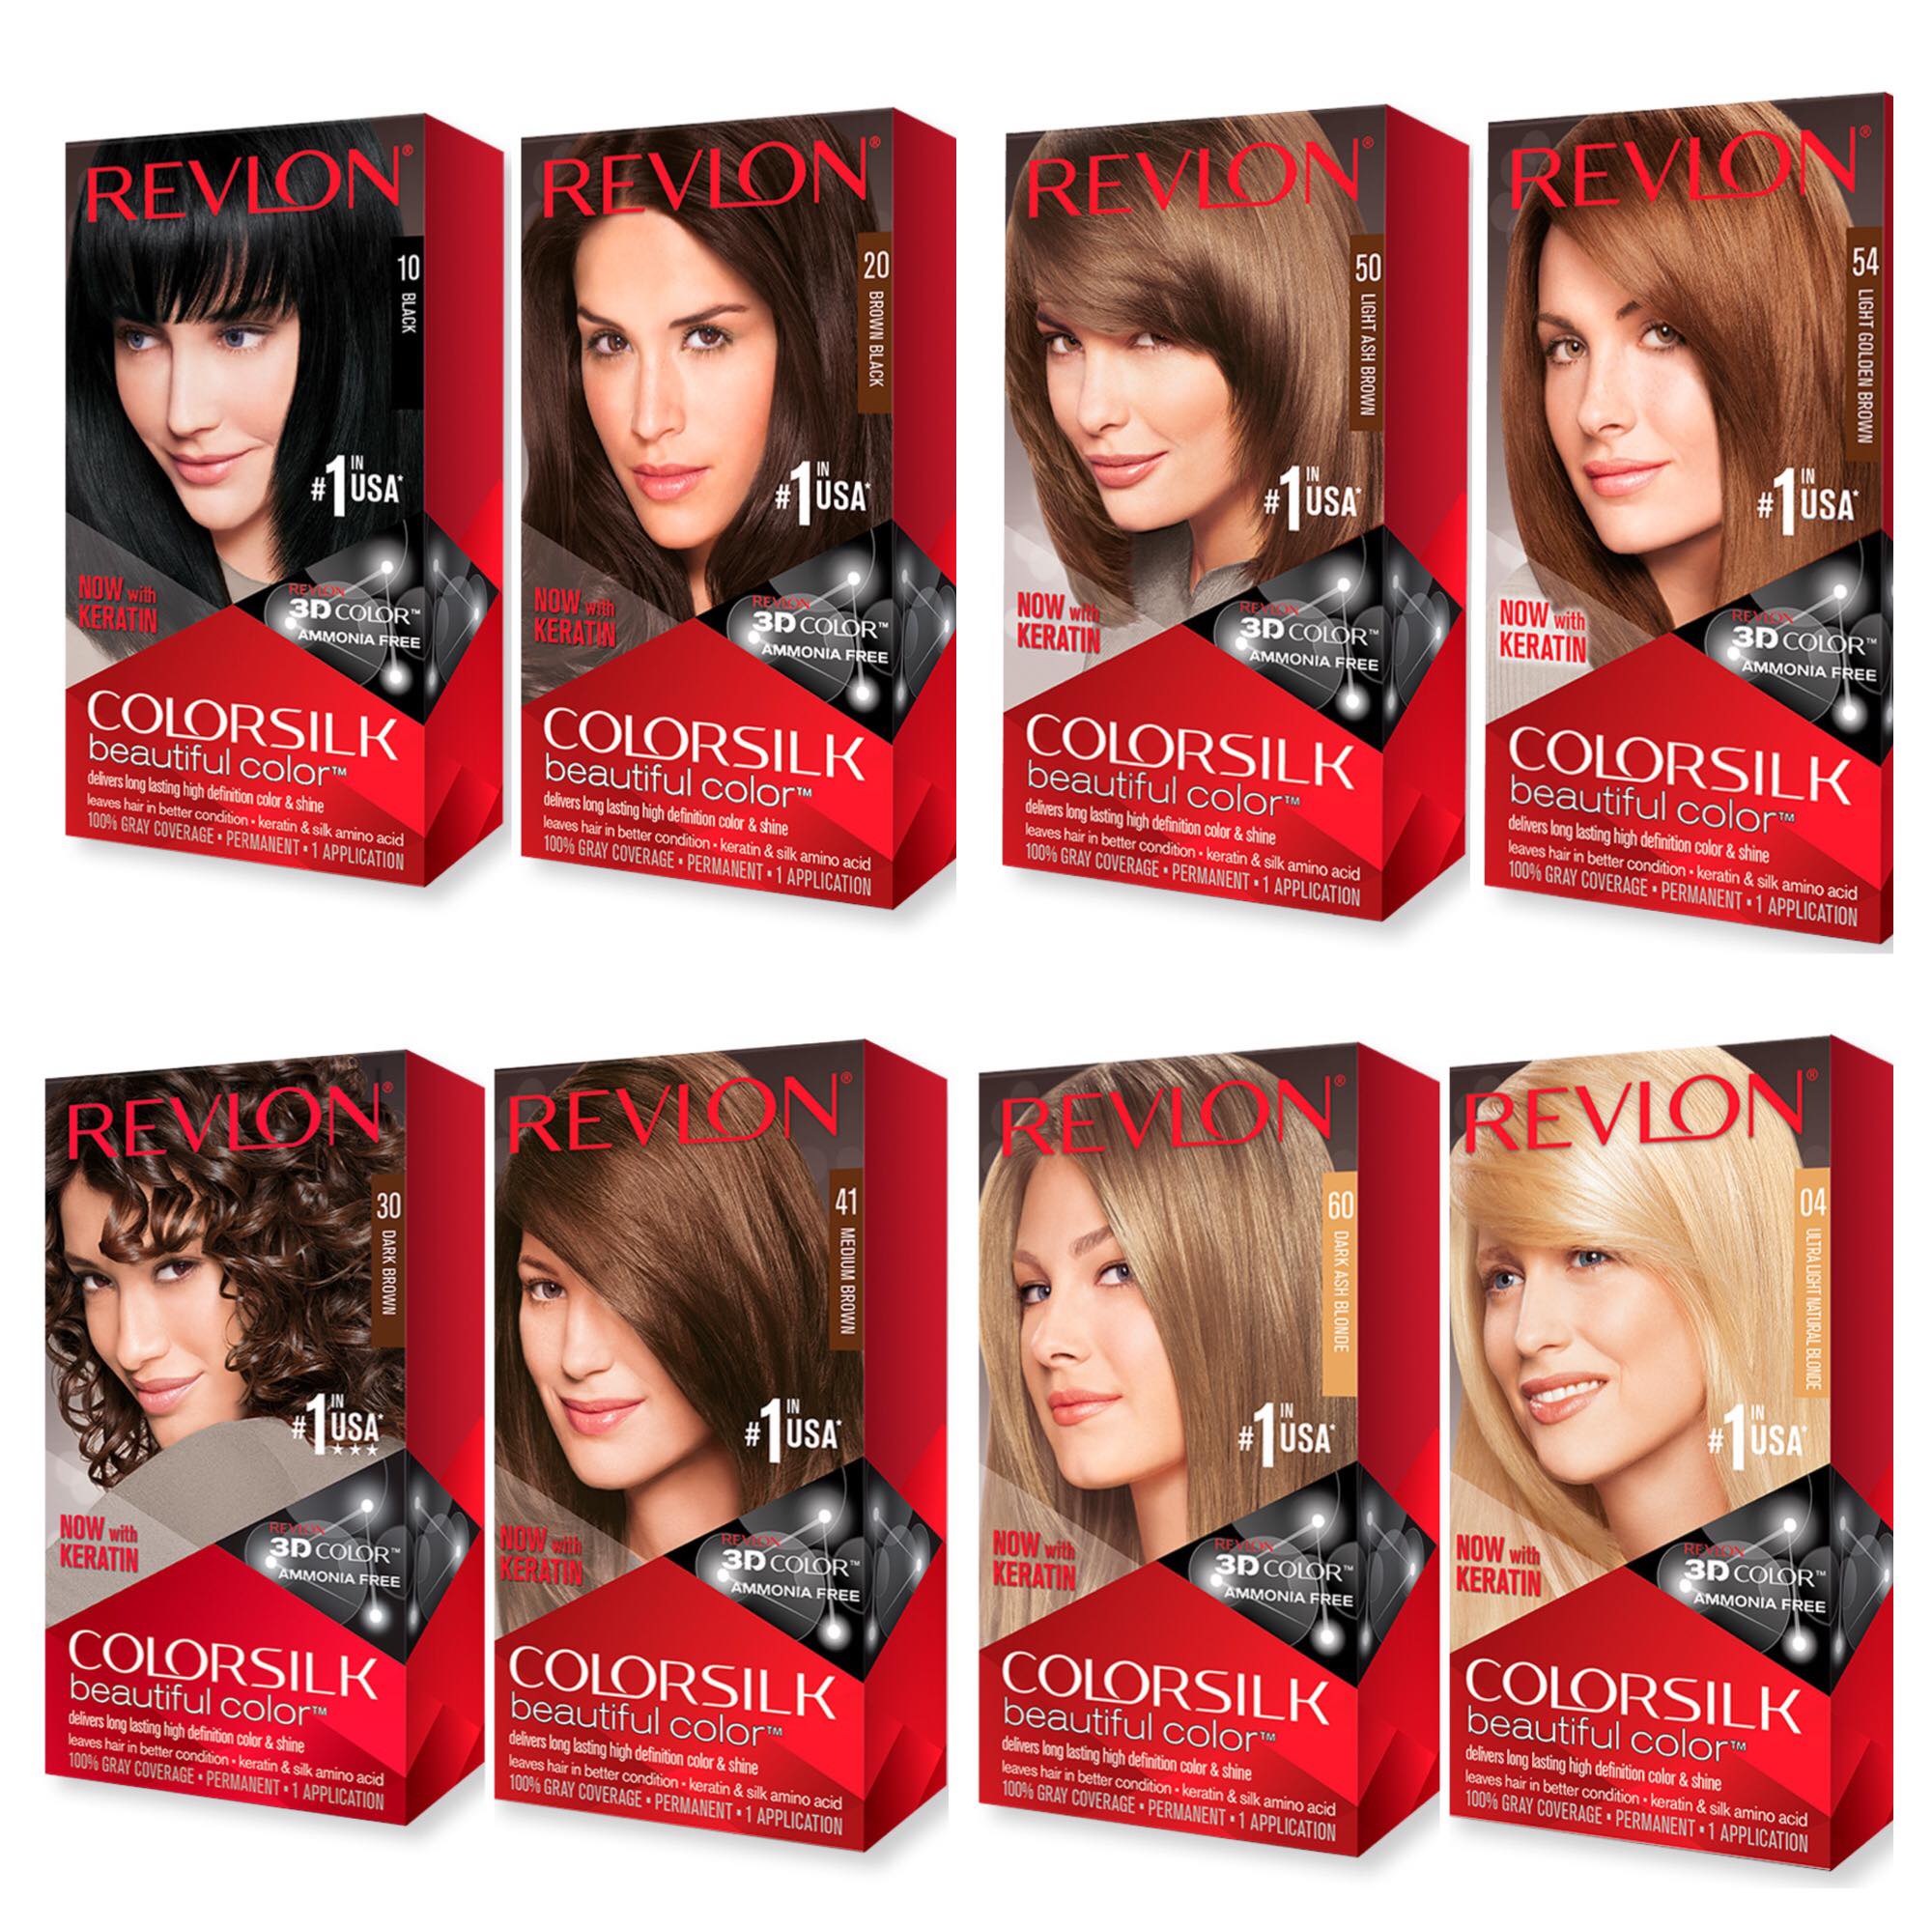 Thương hiệu nhuộm tóc Revlon Colorsilk đang là một ứng viên sáng giá cho việc làm mới mái tóc của bạn. Sản phẩm không chứa amoni và mang lại hiệu ứng bao phủ hoàn toàn với độ bền màu ấn tượng. Hãy xem qua hình ảnh liên quan để tìm hiểu thêm về thuốc nhuộm tóc này.